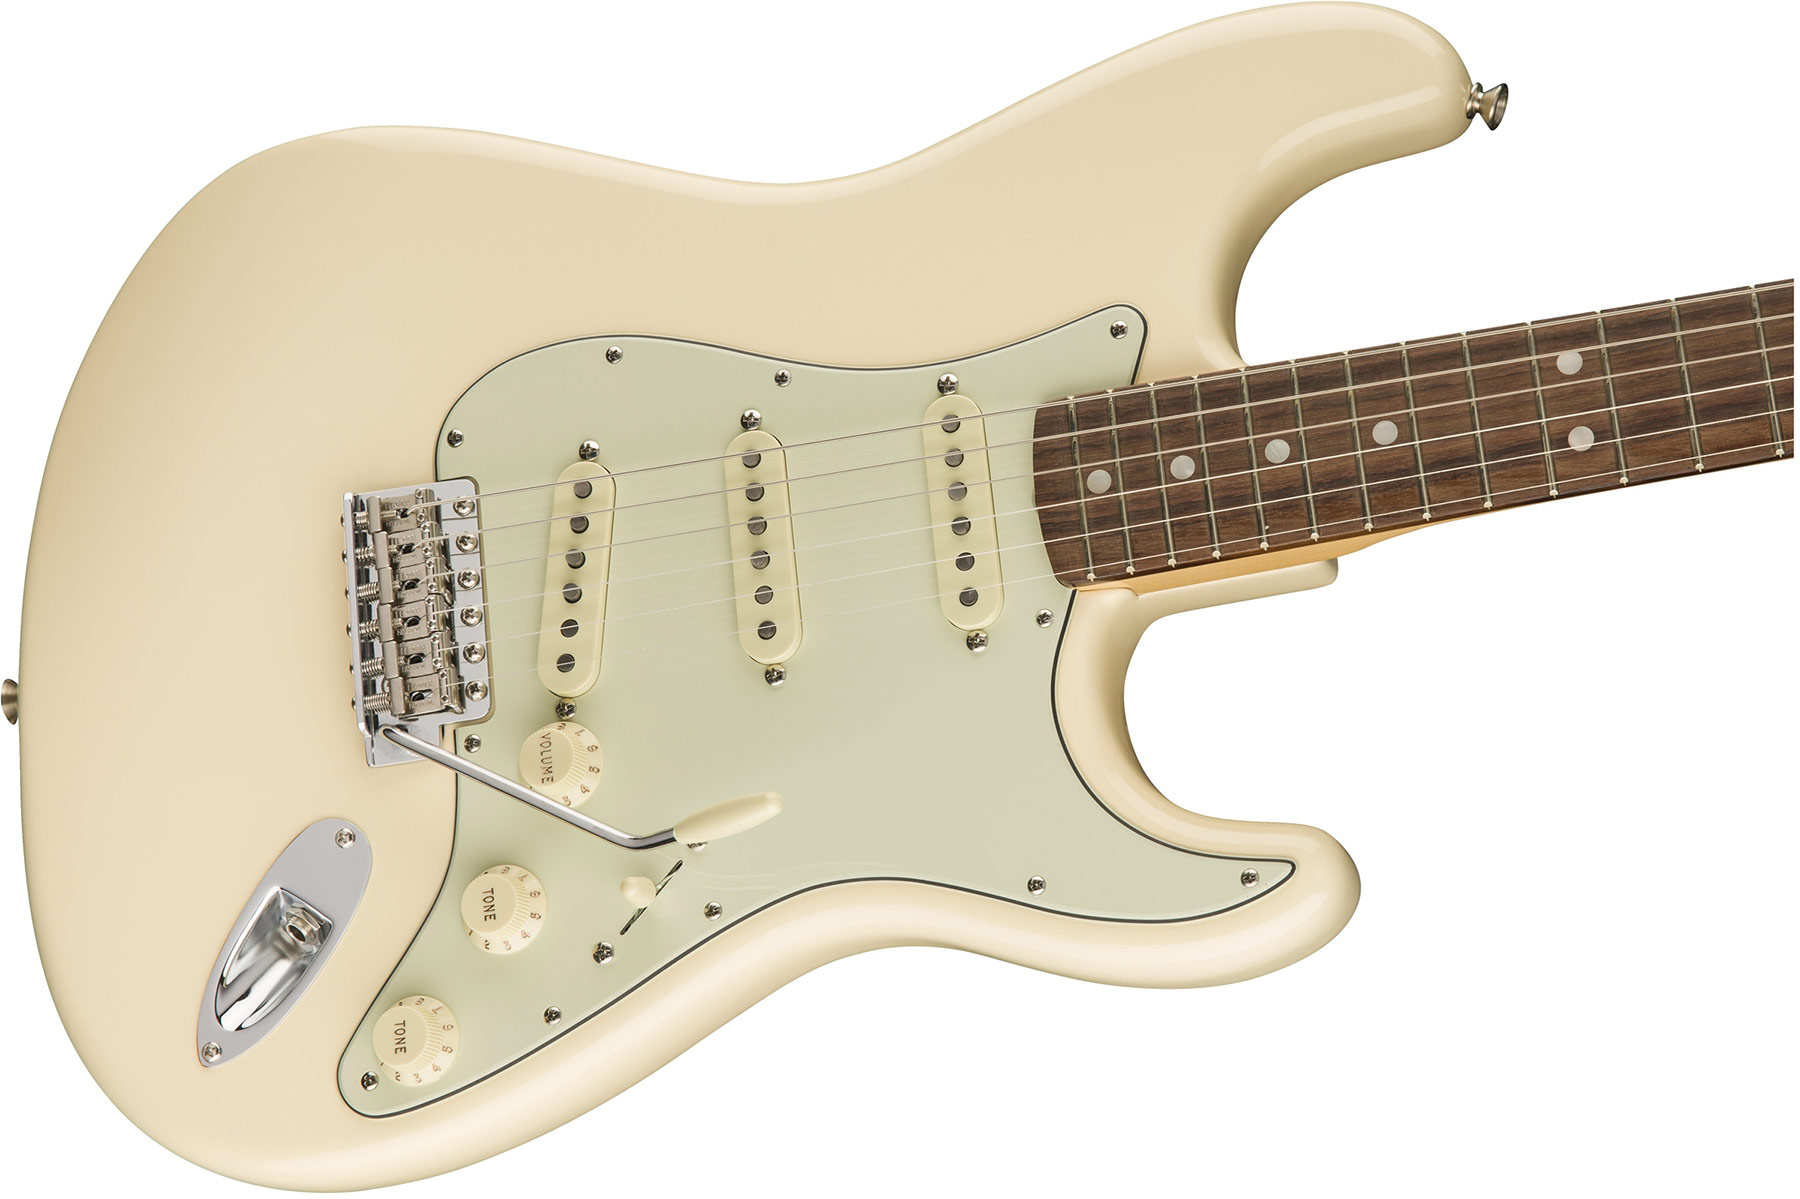 Fender Strat '60s Lh Gaucher American Original Usa Sss Rw - Olympic White - Linkshandige elektrische gitaar - Variation 3